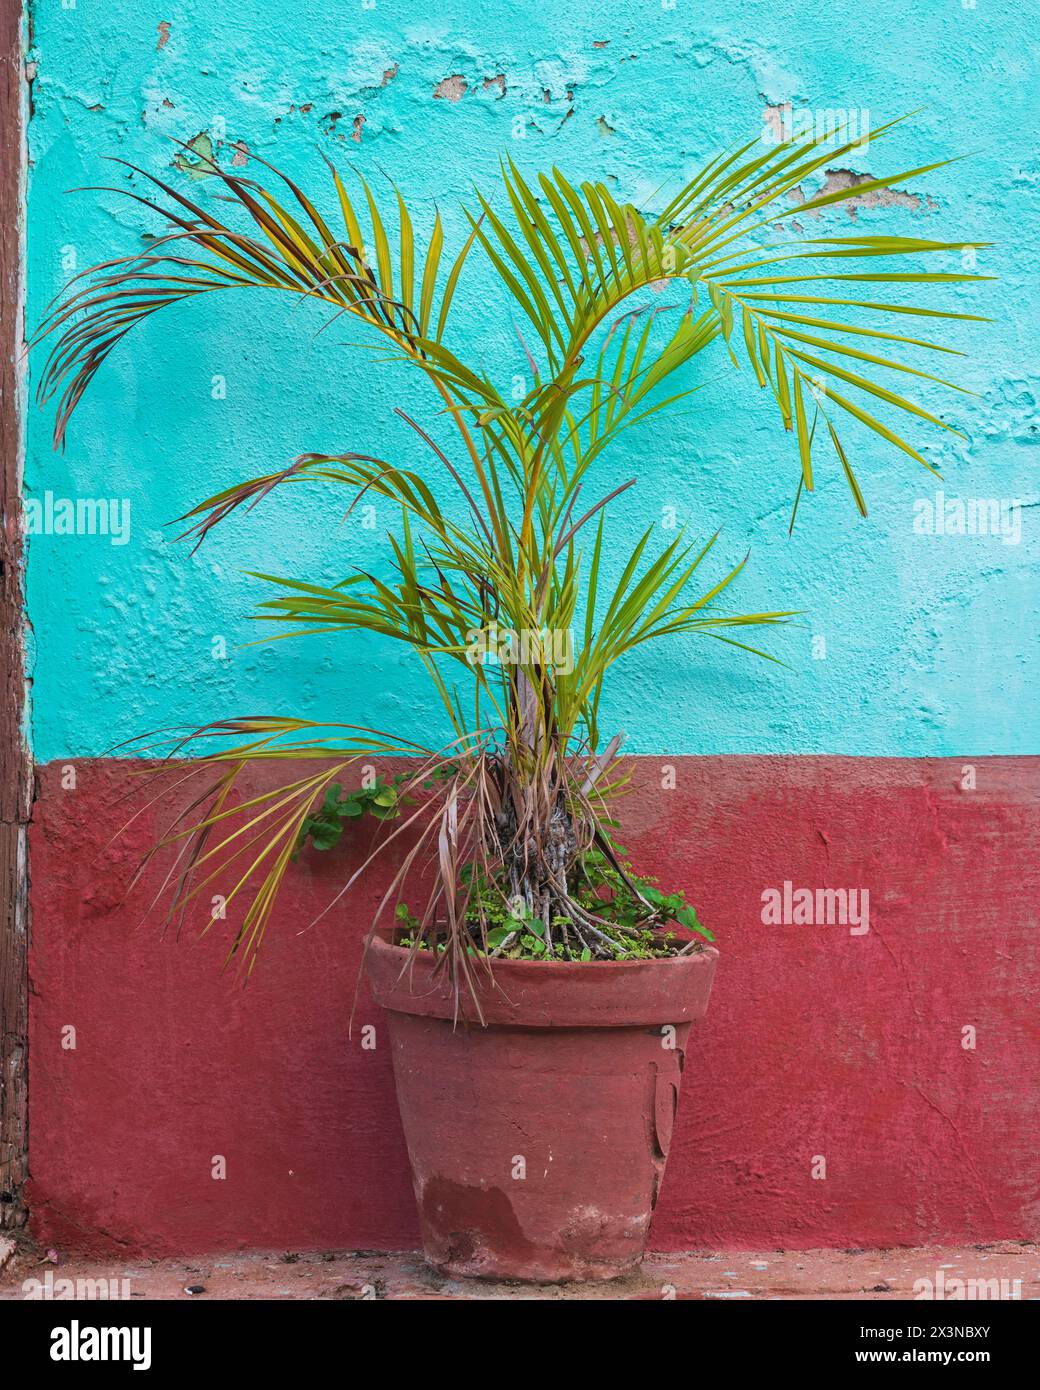 Les plantes en pot se détachaient de la façade de la maison de couleur pastel sur les trottoirs de la vieille ville, Trinidad, Cuba. Banque D'Images